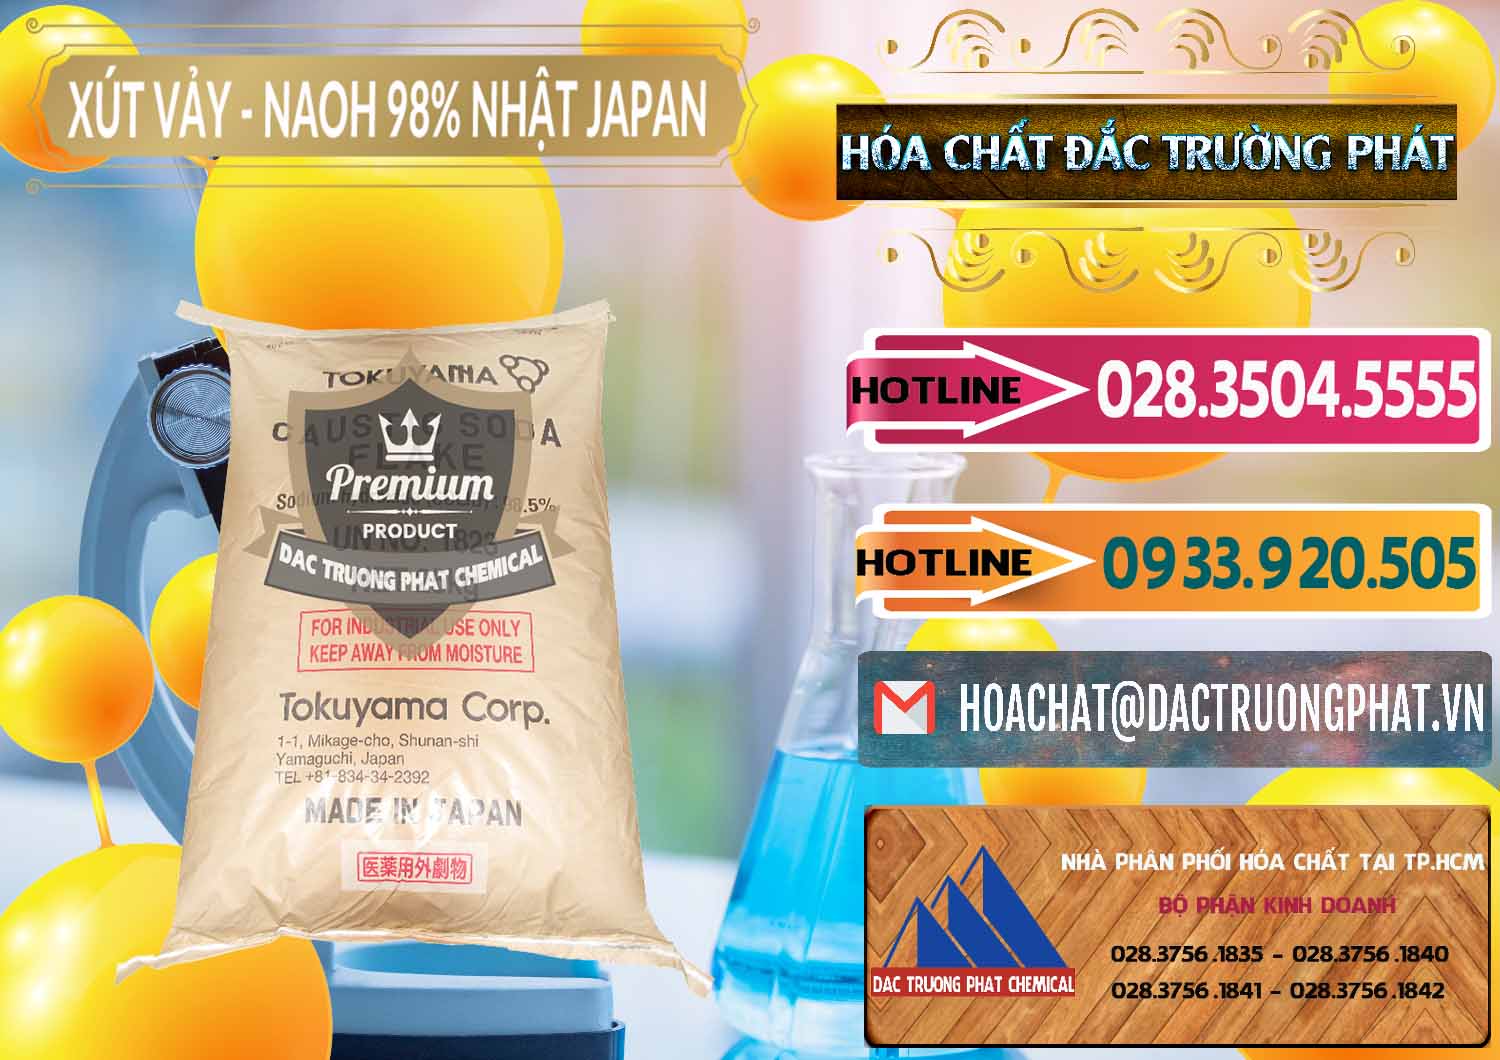 Chuyên cung cấp - bán Xút Vảy - NaOH Vảy 98% Tokuyama Nhật Bản Japan - 0173 - Đơn vị kinh doanh & phân phối hóa chất tại TP.HCM - dactruongphat.vn